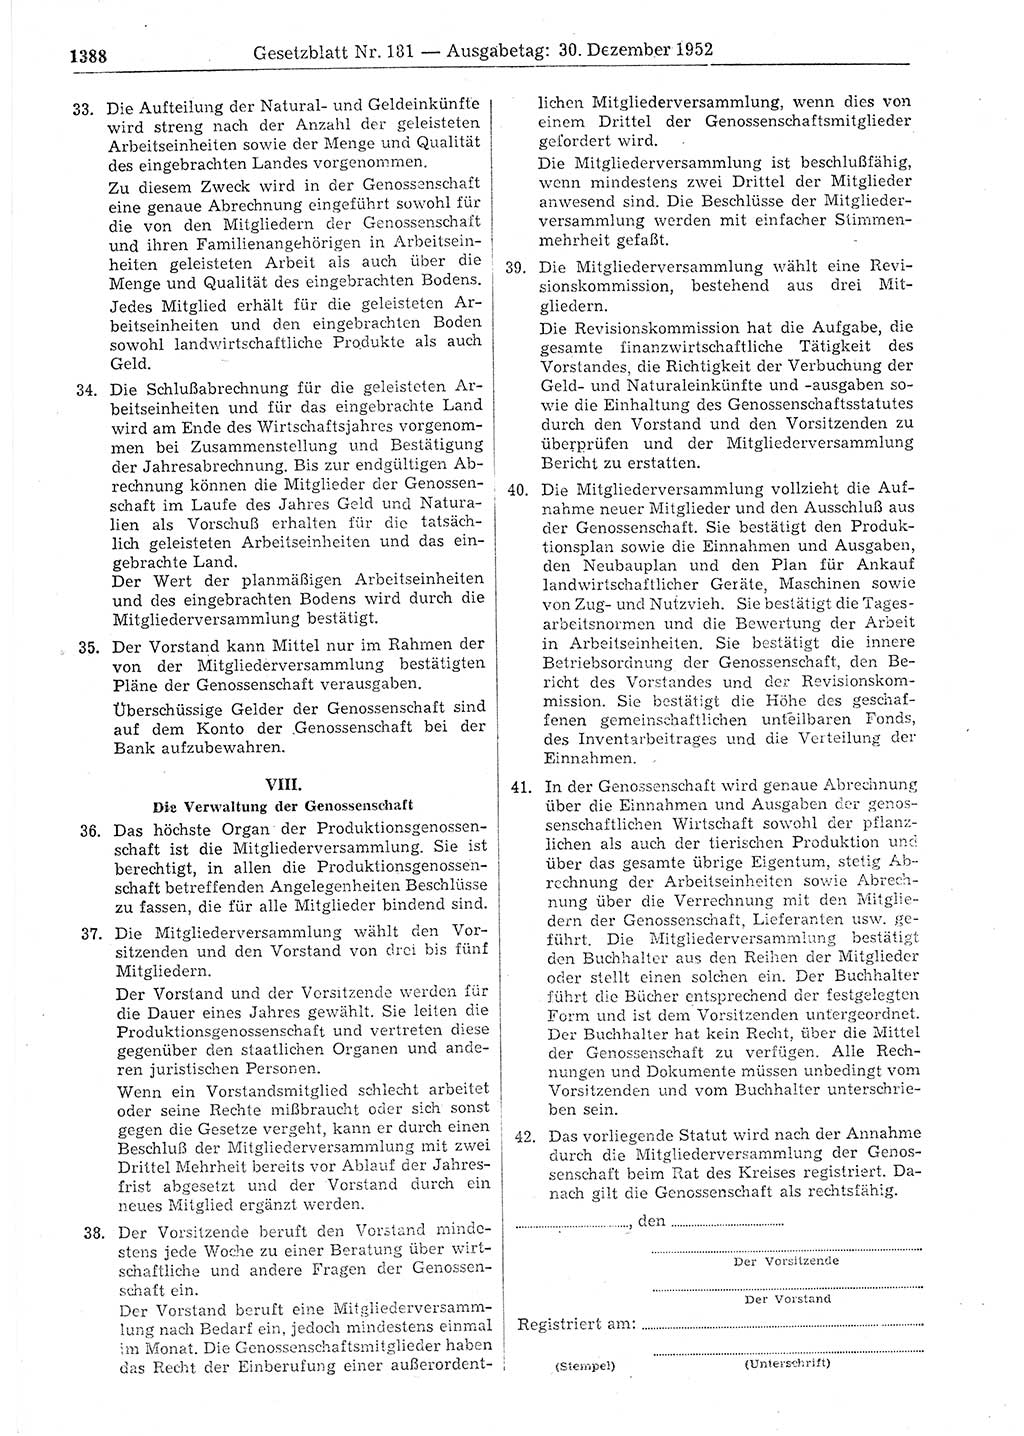 Gesetzblatt (GBl.) der Deutschen Demokratischen Republik (DDR) 1952, Seite 1388 (GBl. DDR 1952, S. 1388)